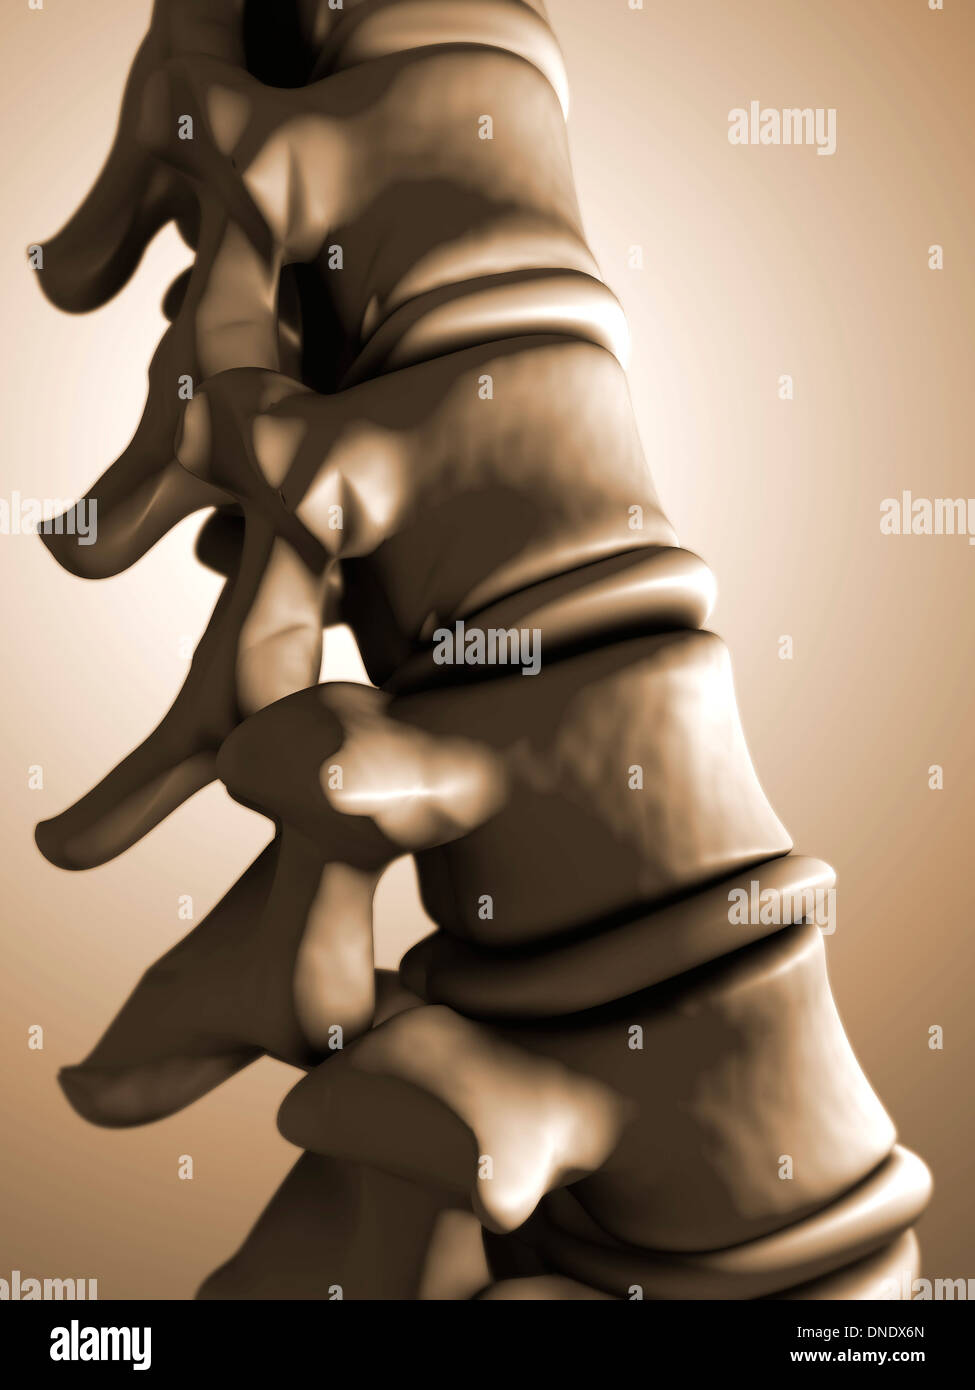 Image conceptuelle des droits de l'épine dorsale. Banque D'Images